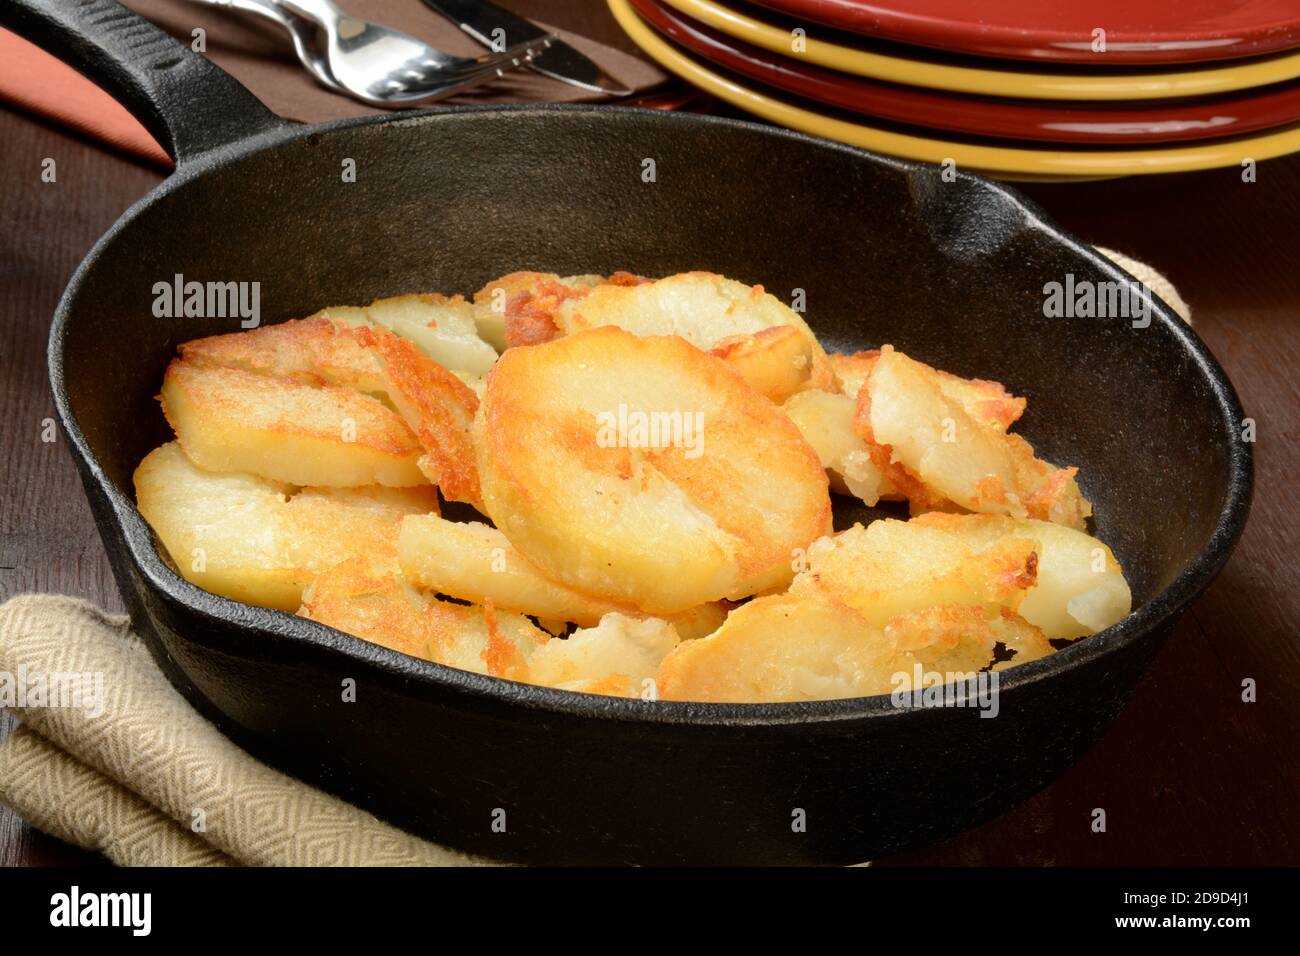 https://c8.alamy.com/comp/2D9D4J1/home-fried-potatoes-iln-a-cast-iron-skillet-with-serving-plates-2D9D4J1.jpg